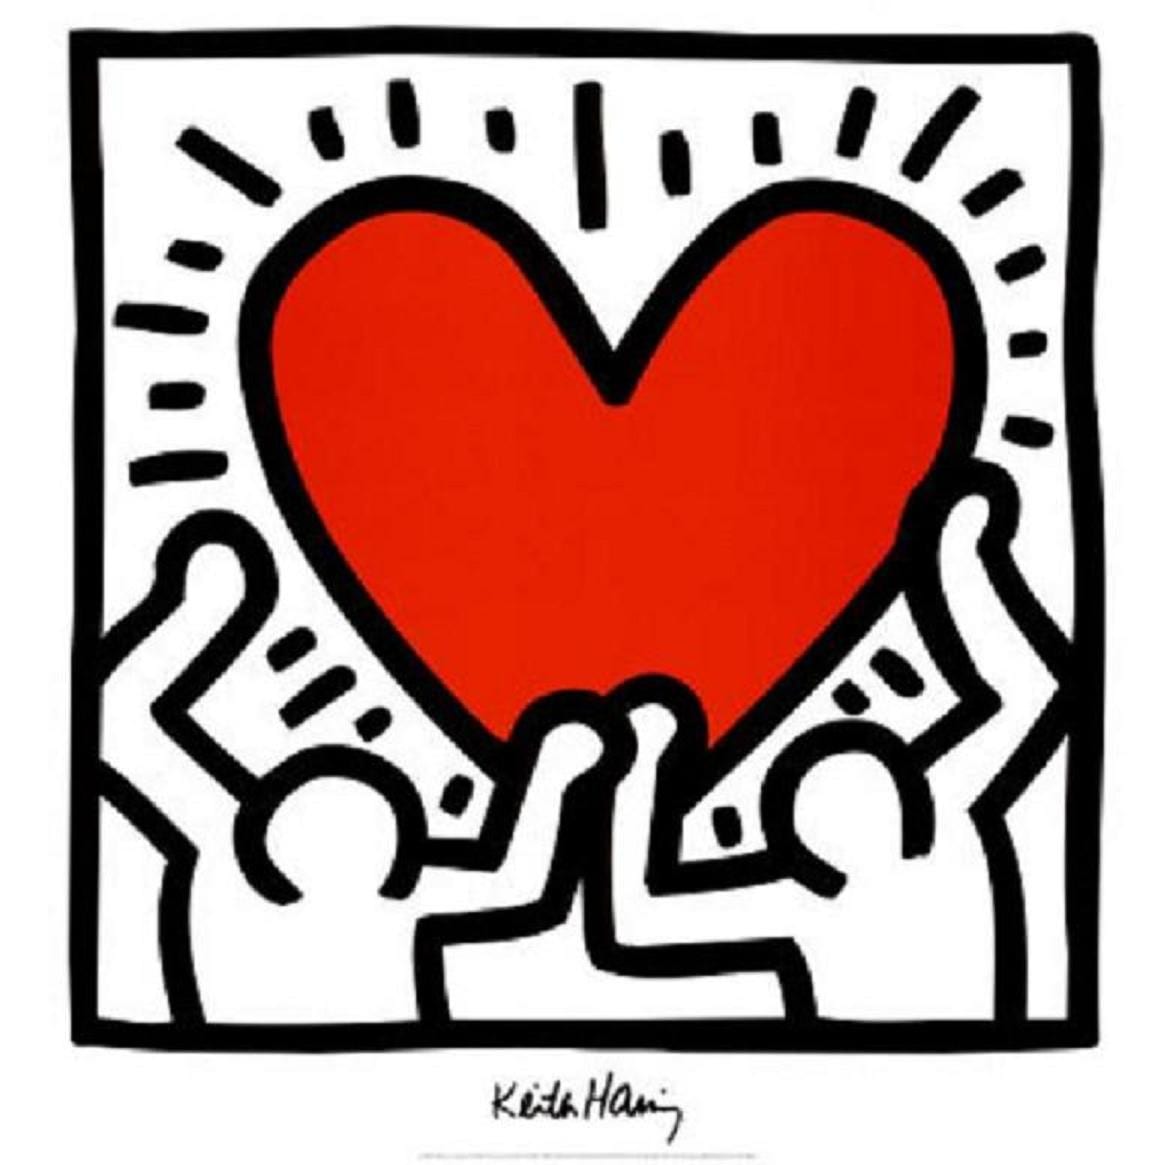 Keith Haring e la magia di dipingere